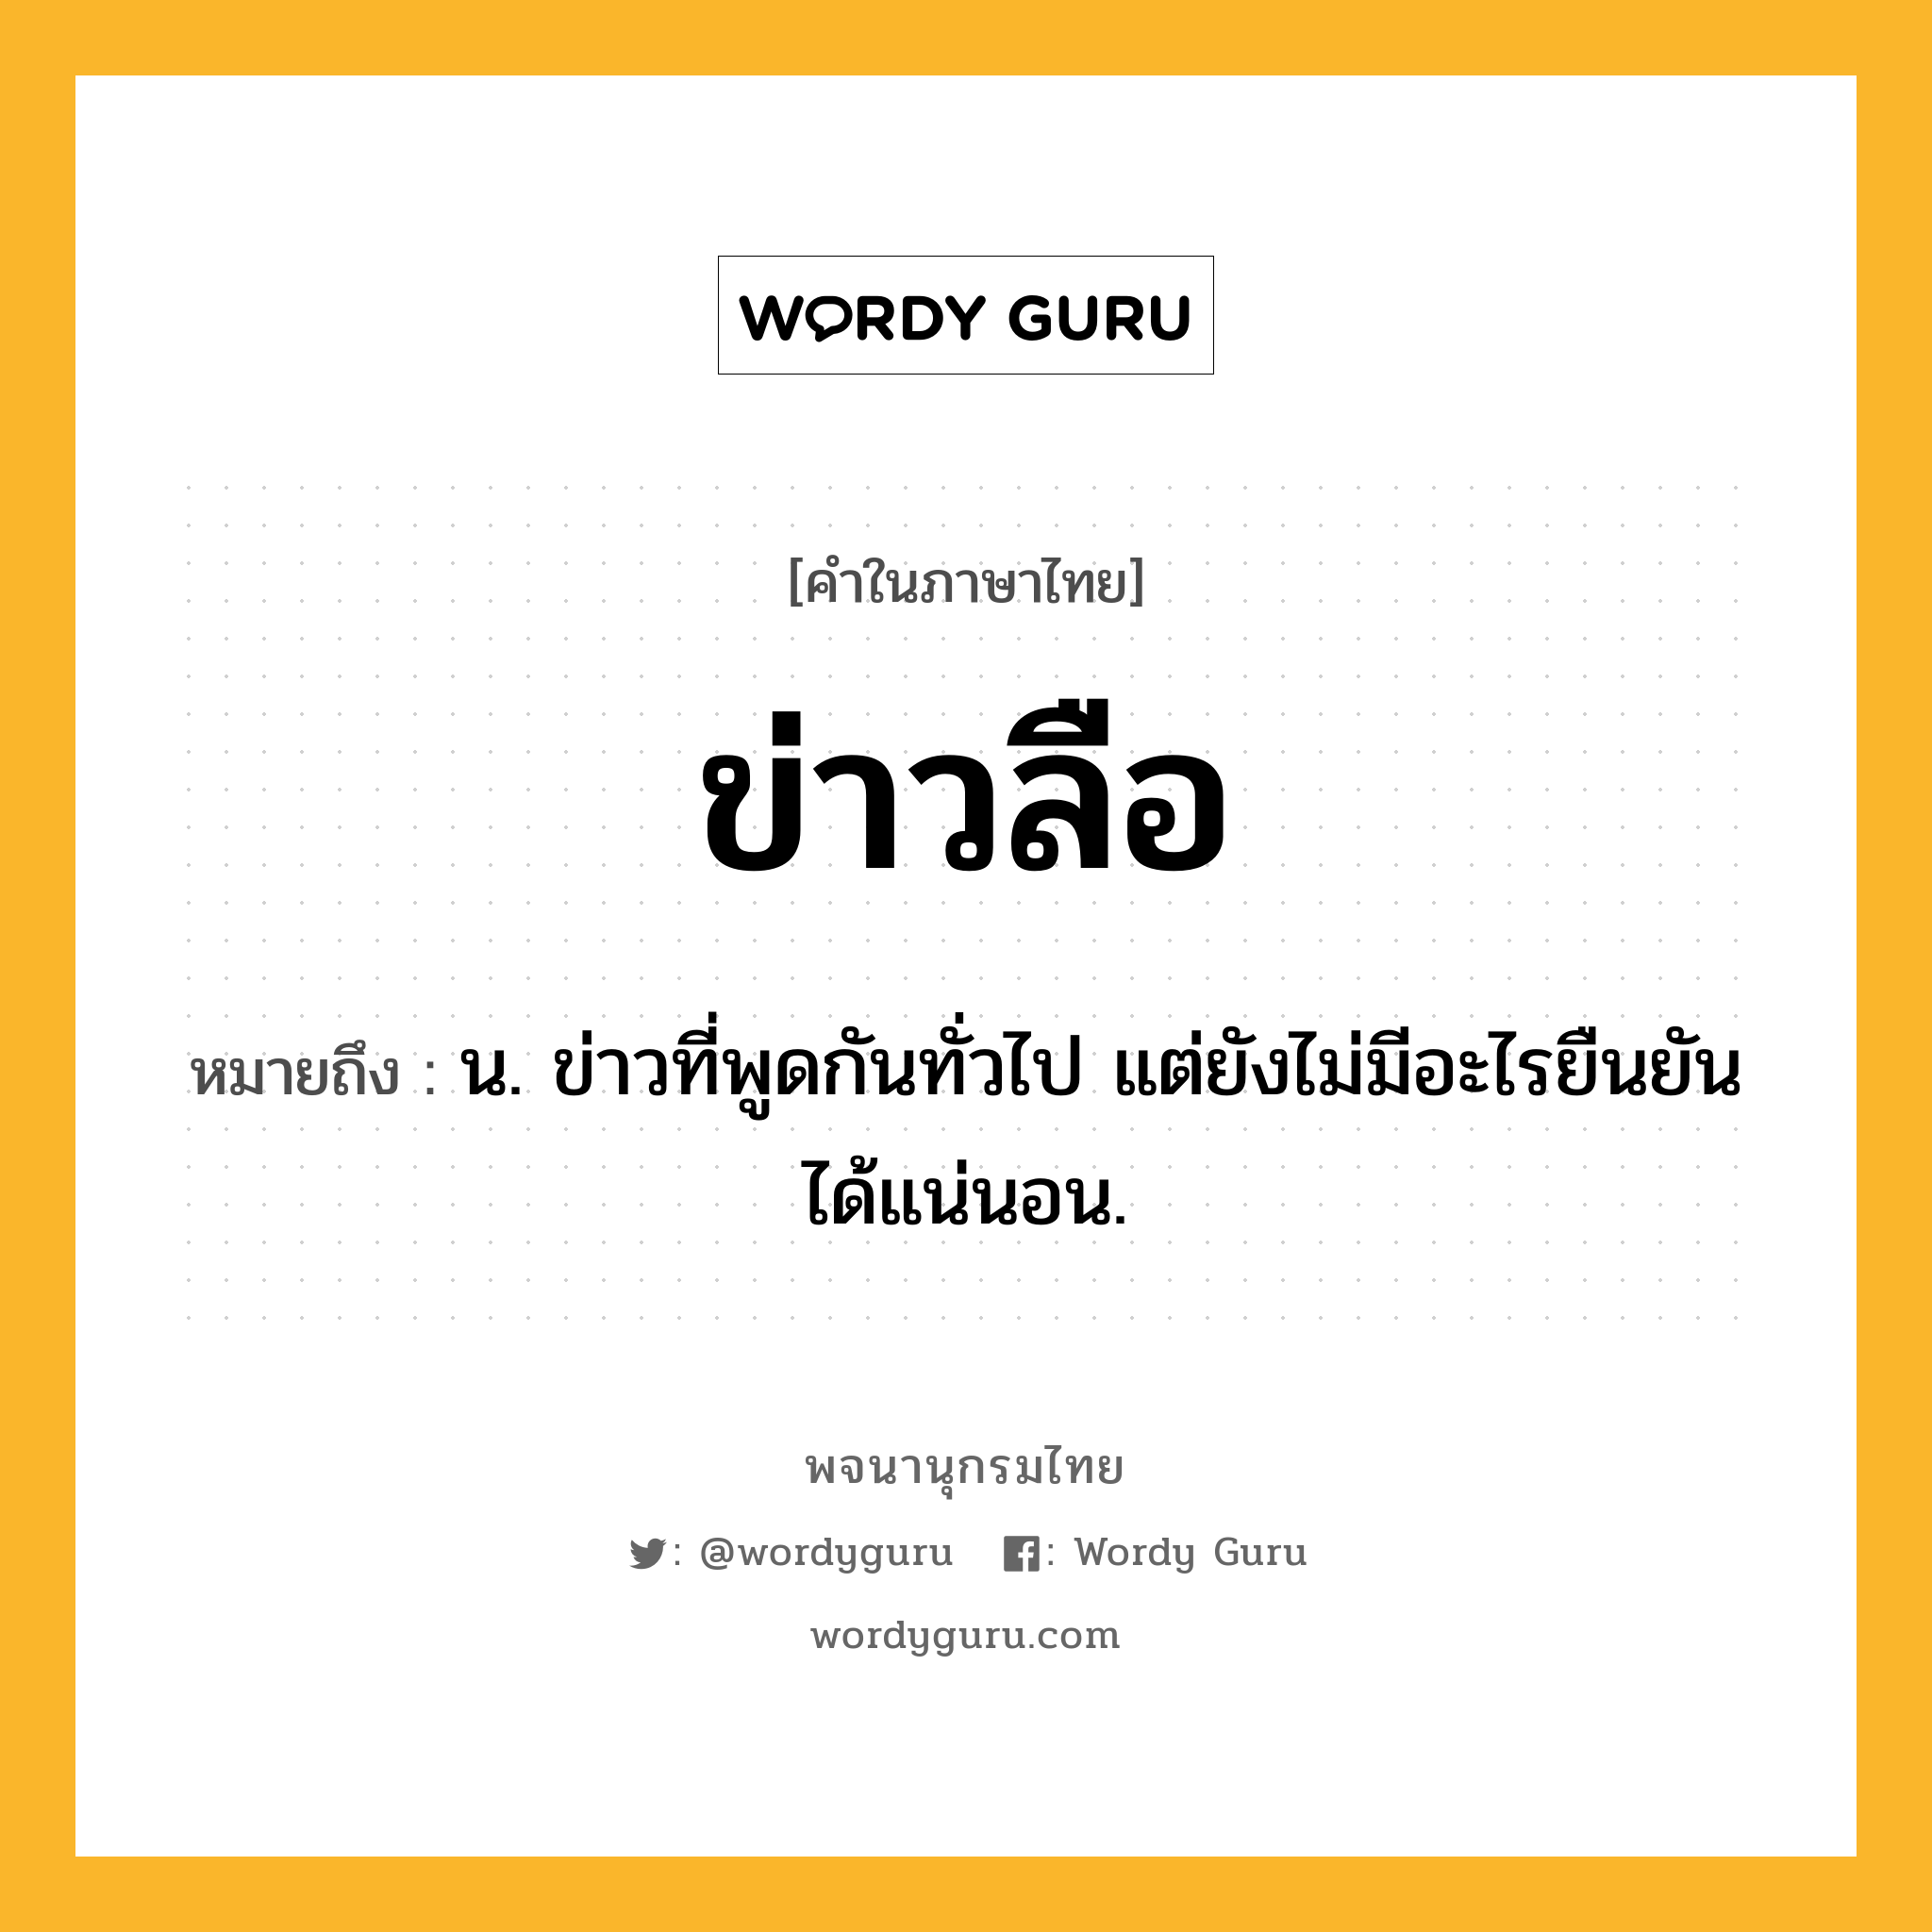 ข่าวลือ หมายถึงอะไร?, คำในภาษาไทย ข่าวลือ หมายถึง น. ข่าวที่พูดกันทั่วไป แต่ยังไม่มีอะไรยืนยันได้แน่นอน.